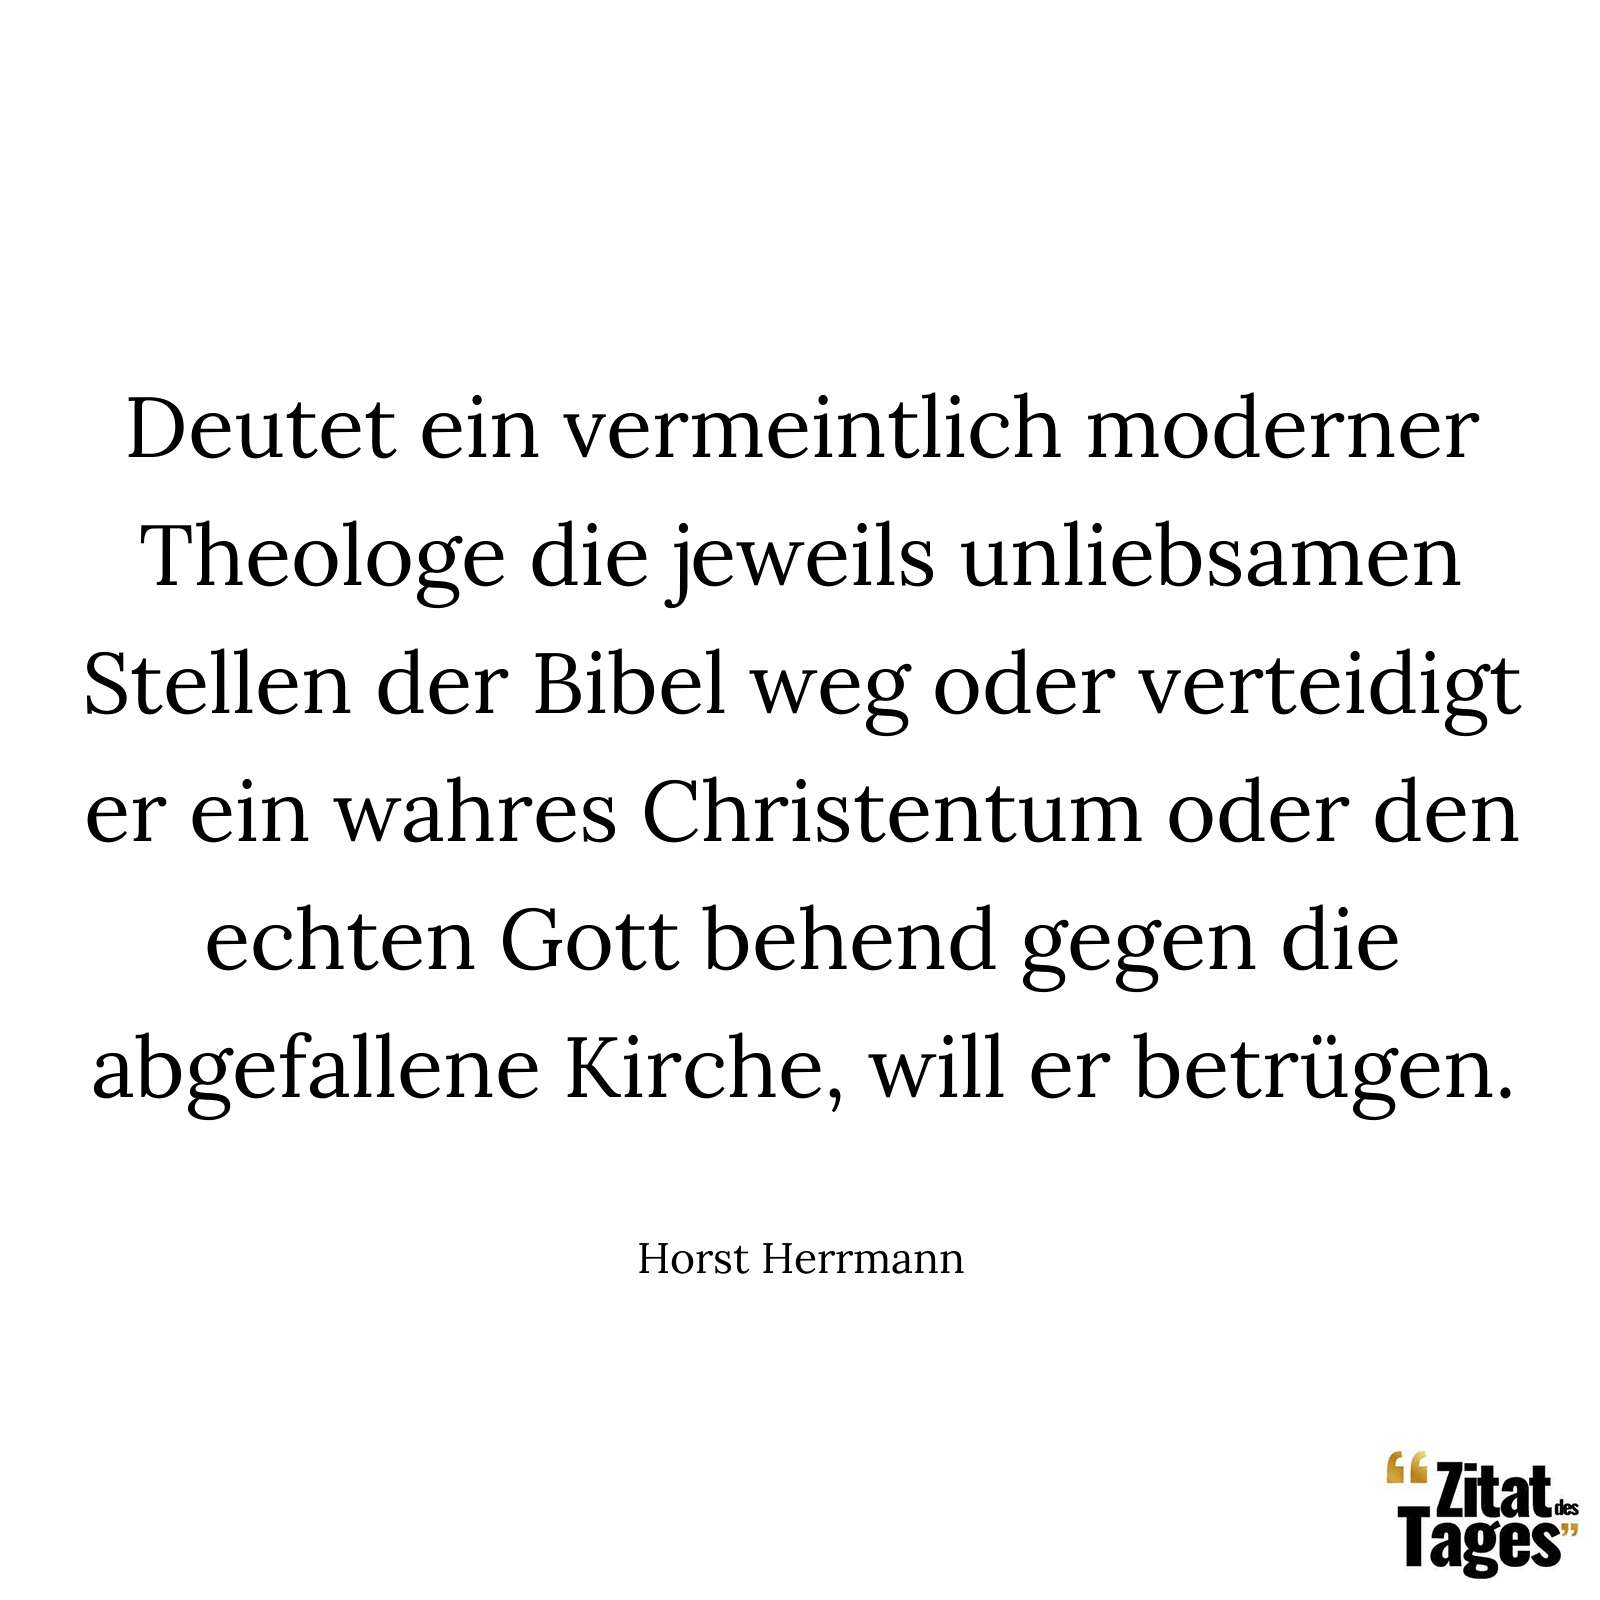 Deutet ein vermeintlich moderner Theologe die jeweils unliebsamen Stellen der Bibel weg oder verteidigt er ein wahres Christentum oder den echten Gott behend gegen die abgefallene Kirche, will er betrügen. - Horst Herrmann